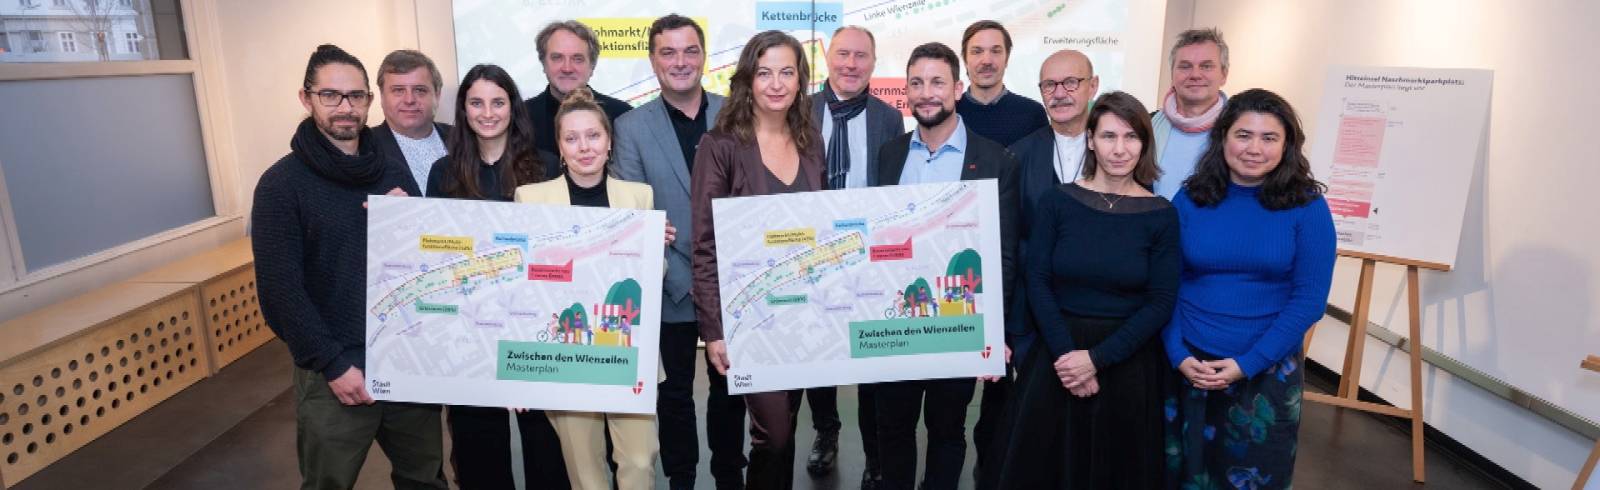 Bezirksflash: Neue Pläne für Naschmarkt-Umbau